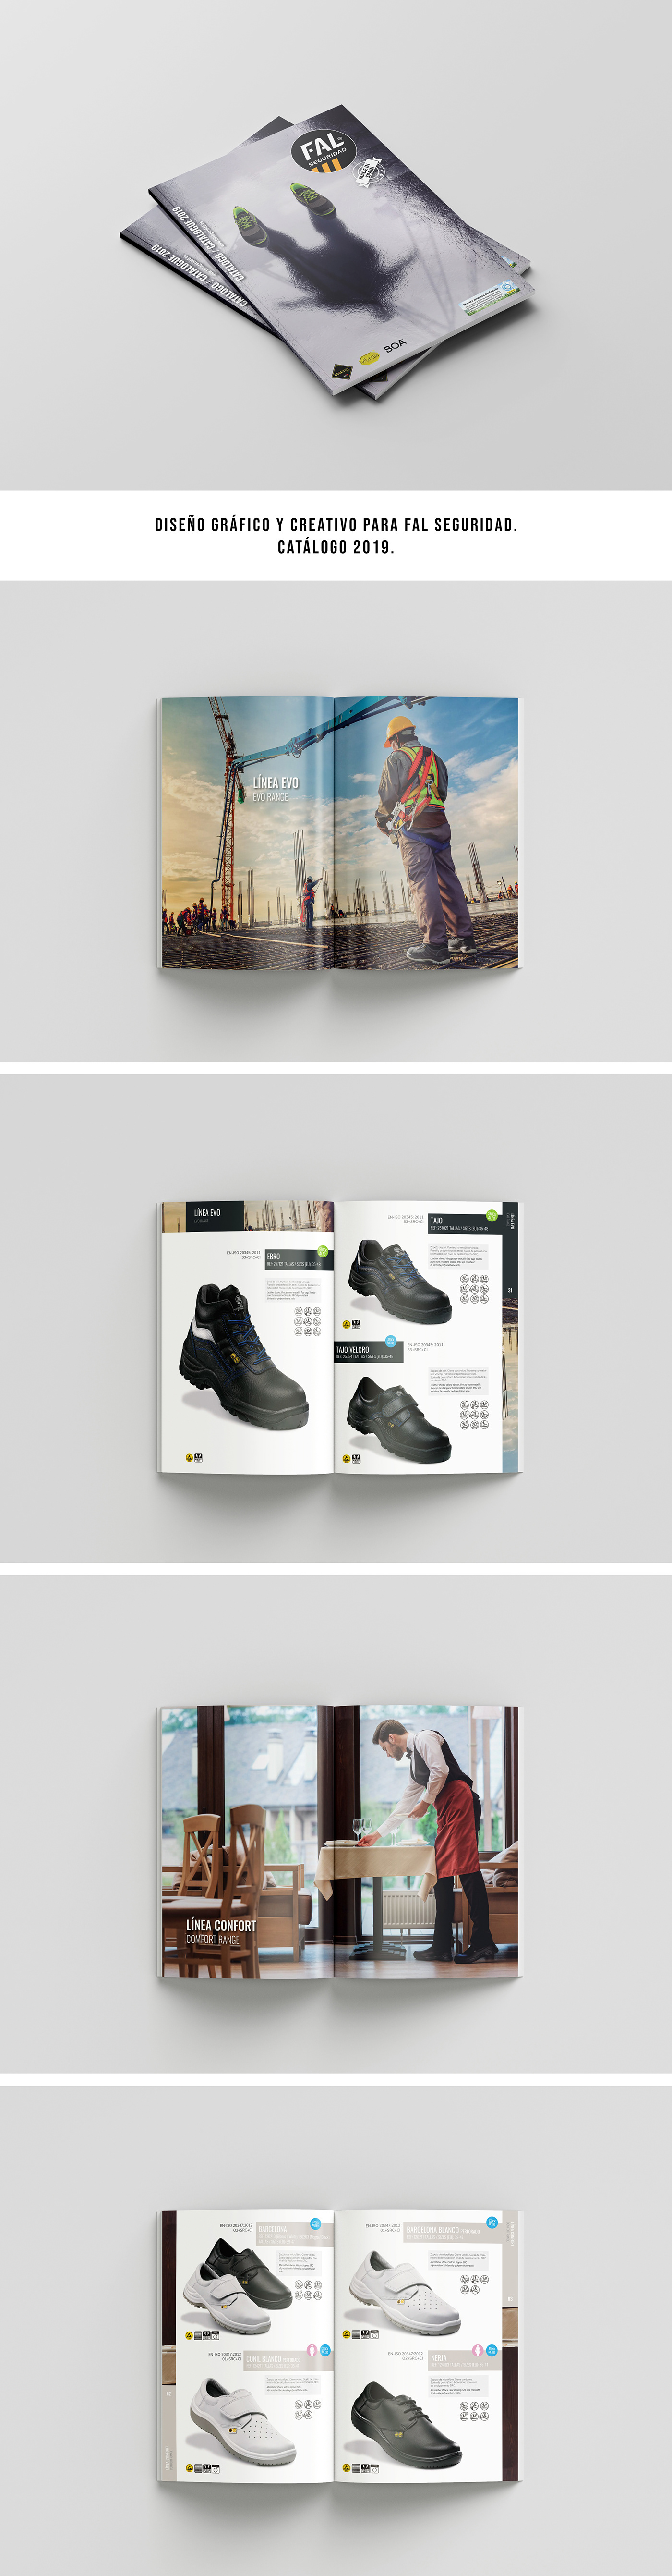 diseñador grafico catalogo editorial maquetación revista Mockup